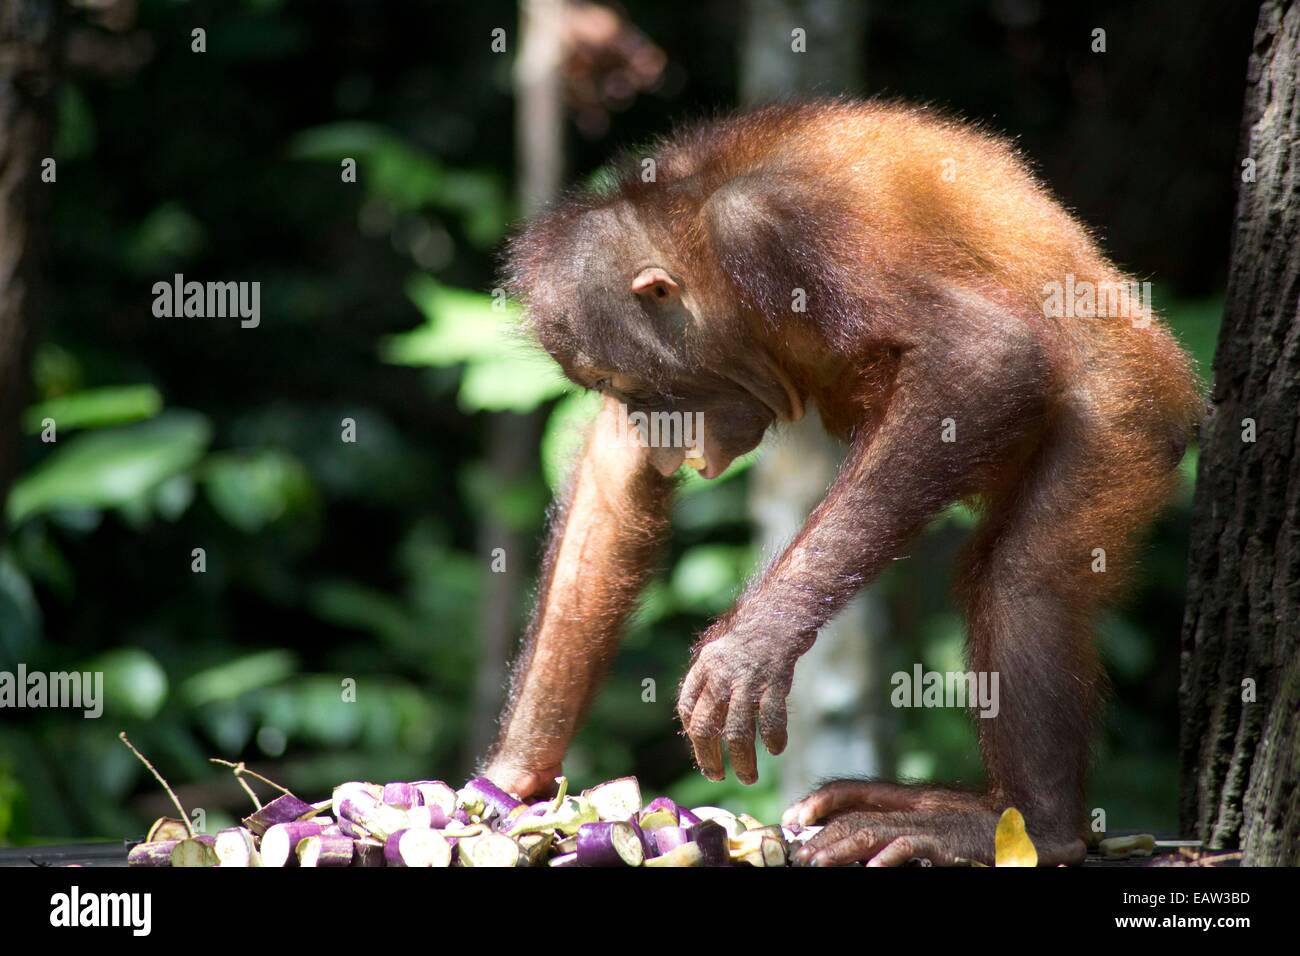 Orangutans at sanctuaries in Malaysia Stock Photo